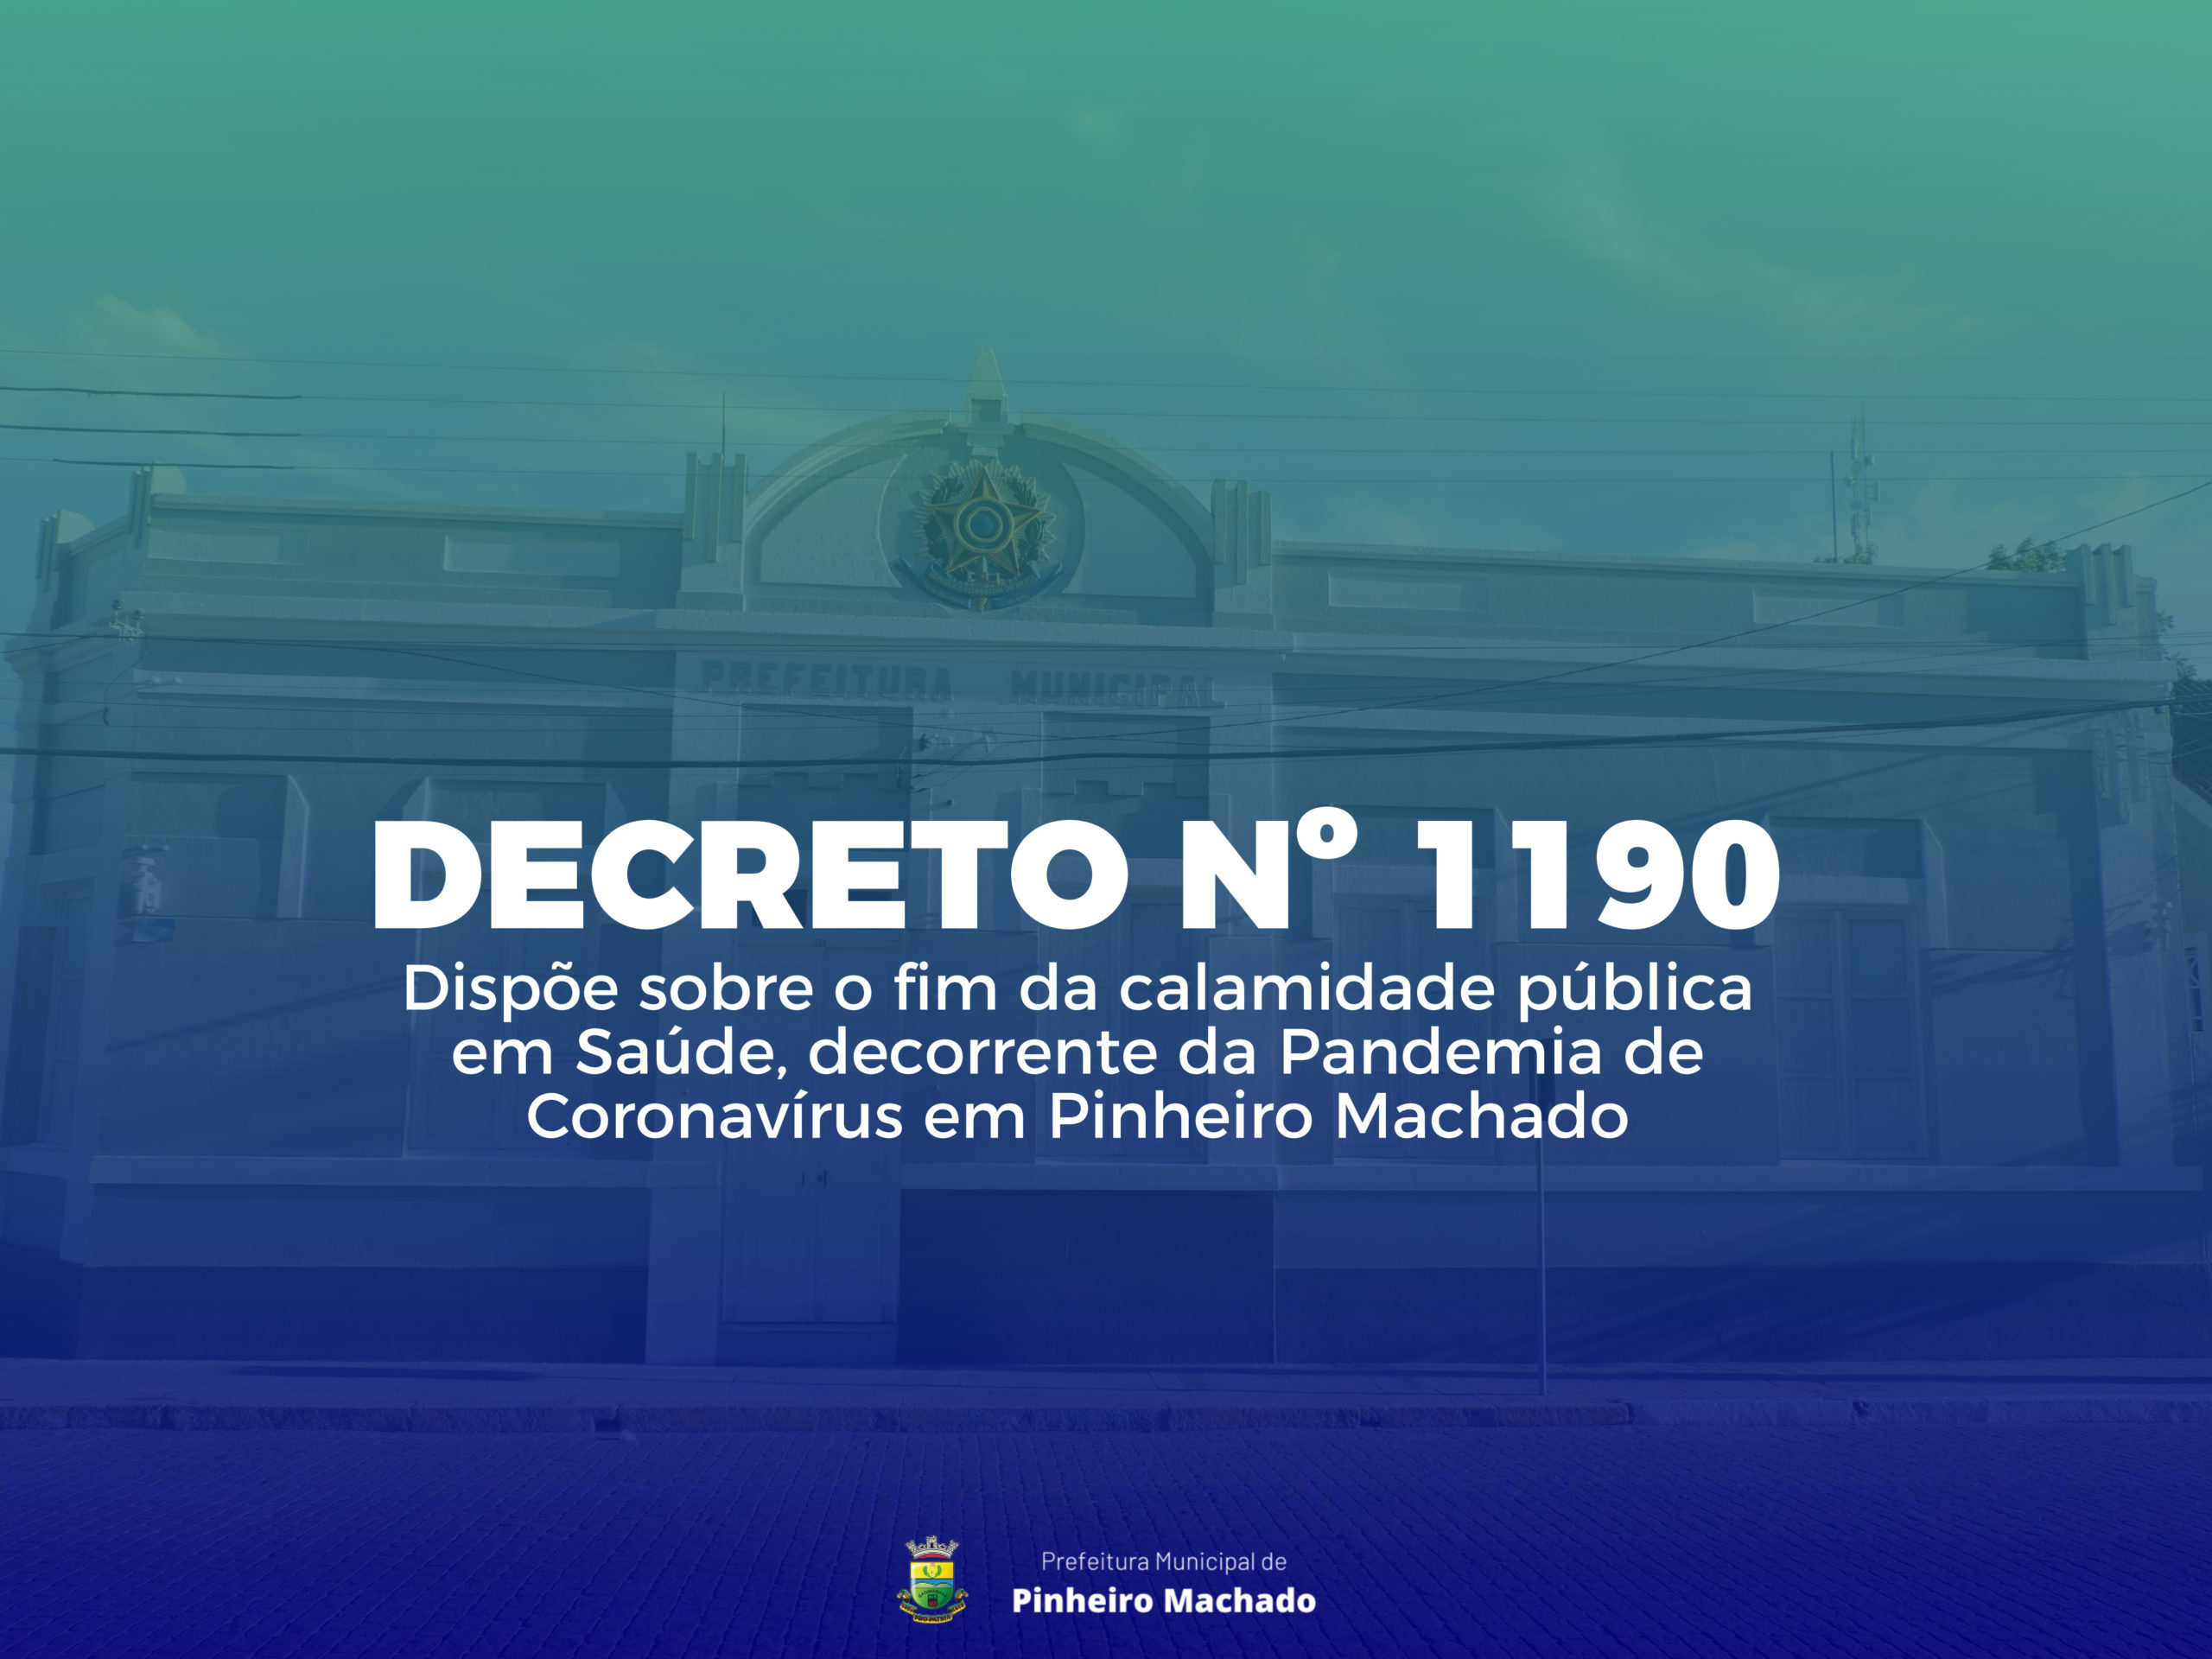 Decreto põe fim ao estado de calamidade pública decorrente da pandemia de covid-19 em Pinheiro Machado